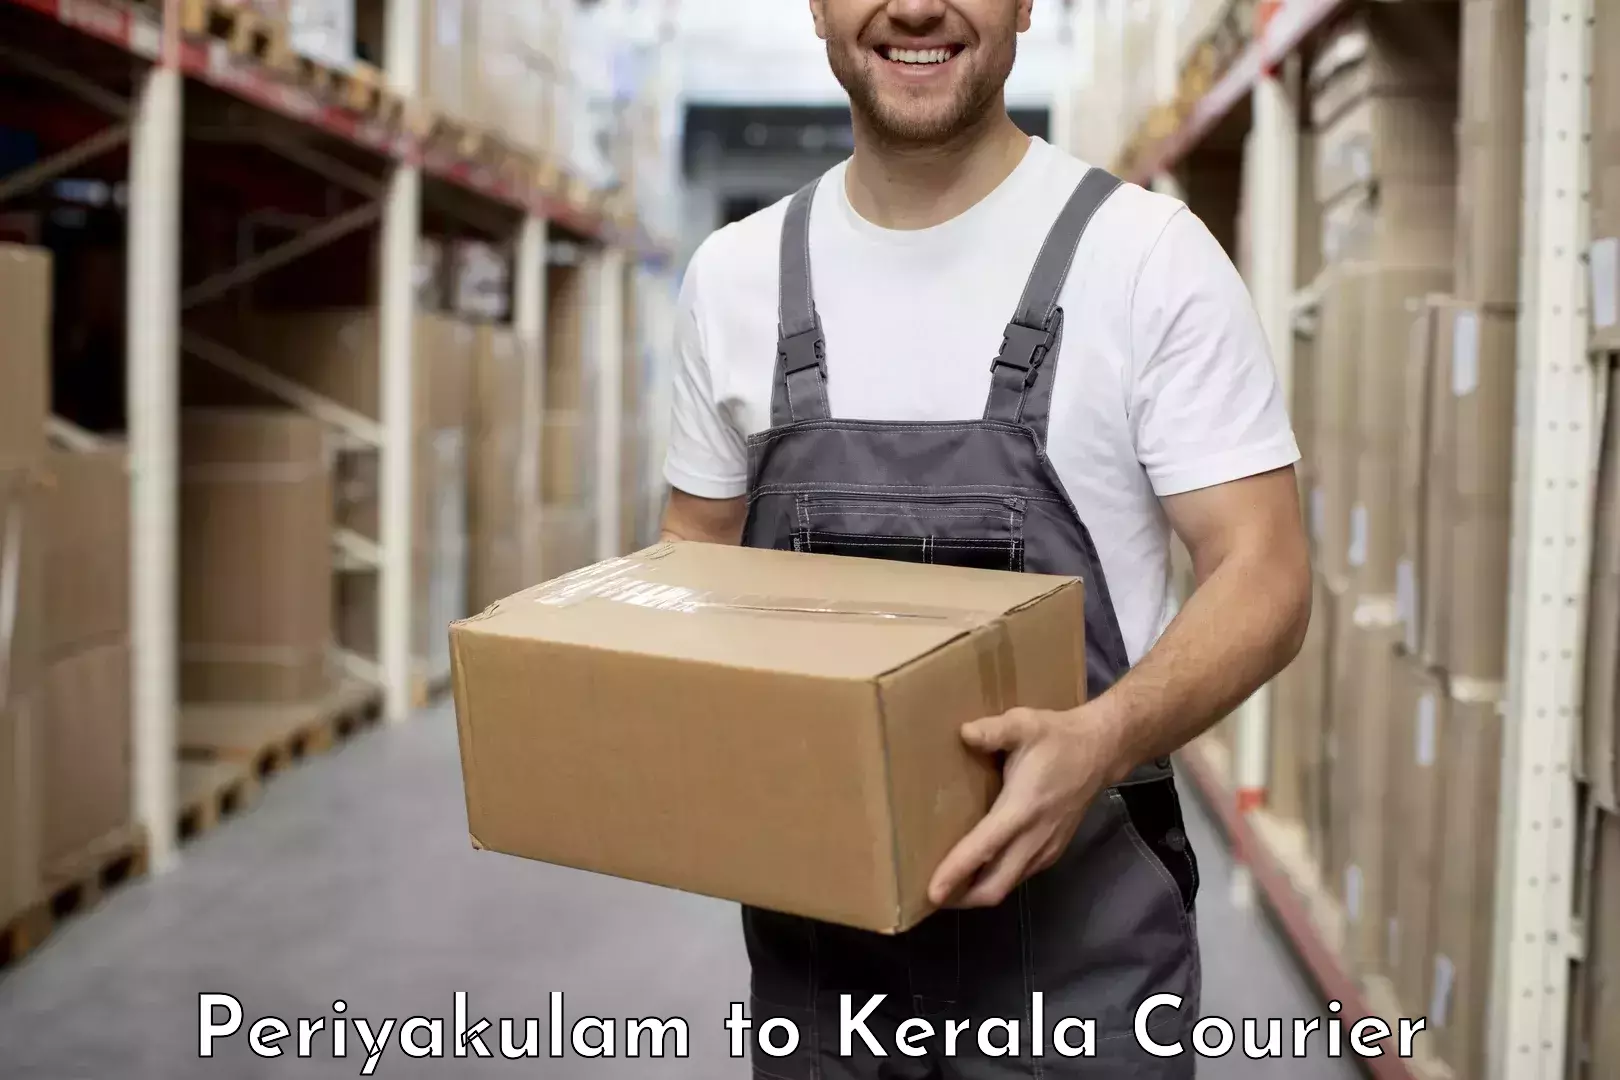 Corporate courier solutions Periyakulam to Kottarakkara